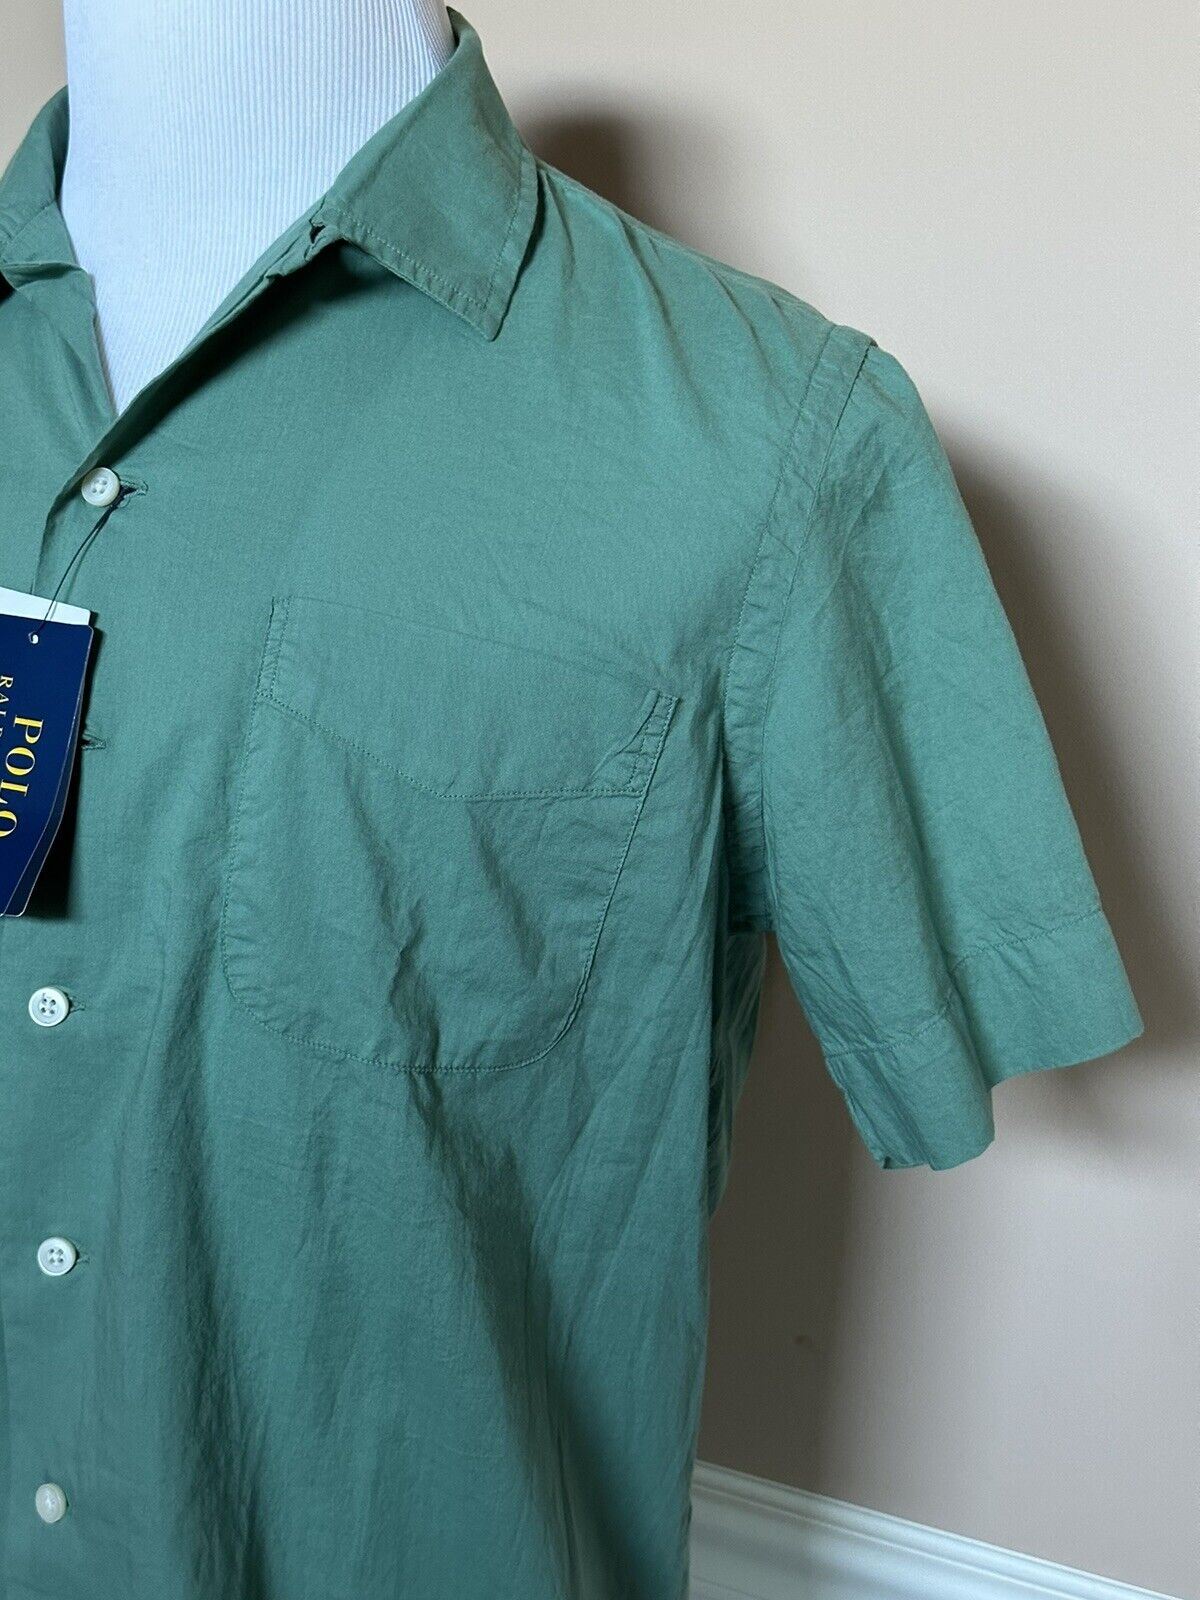 NWT Polo Ralph Lauren Men's Green Short Sleeve Dress Shirt 2XL Made in India